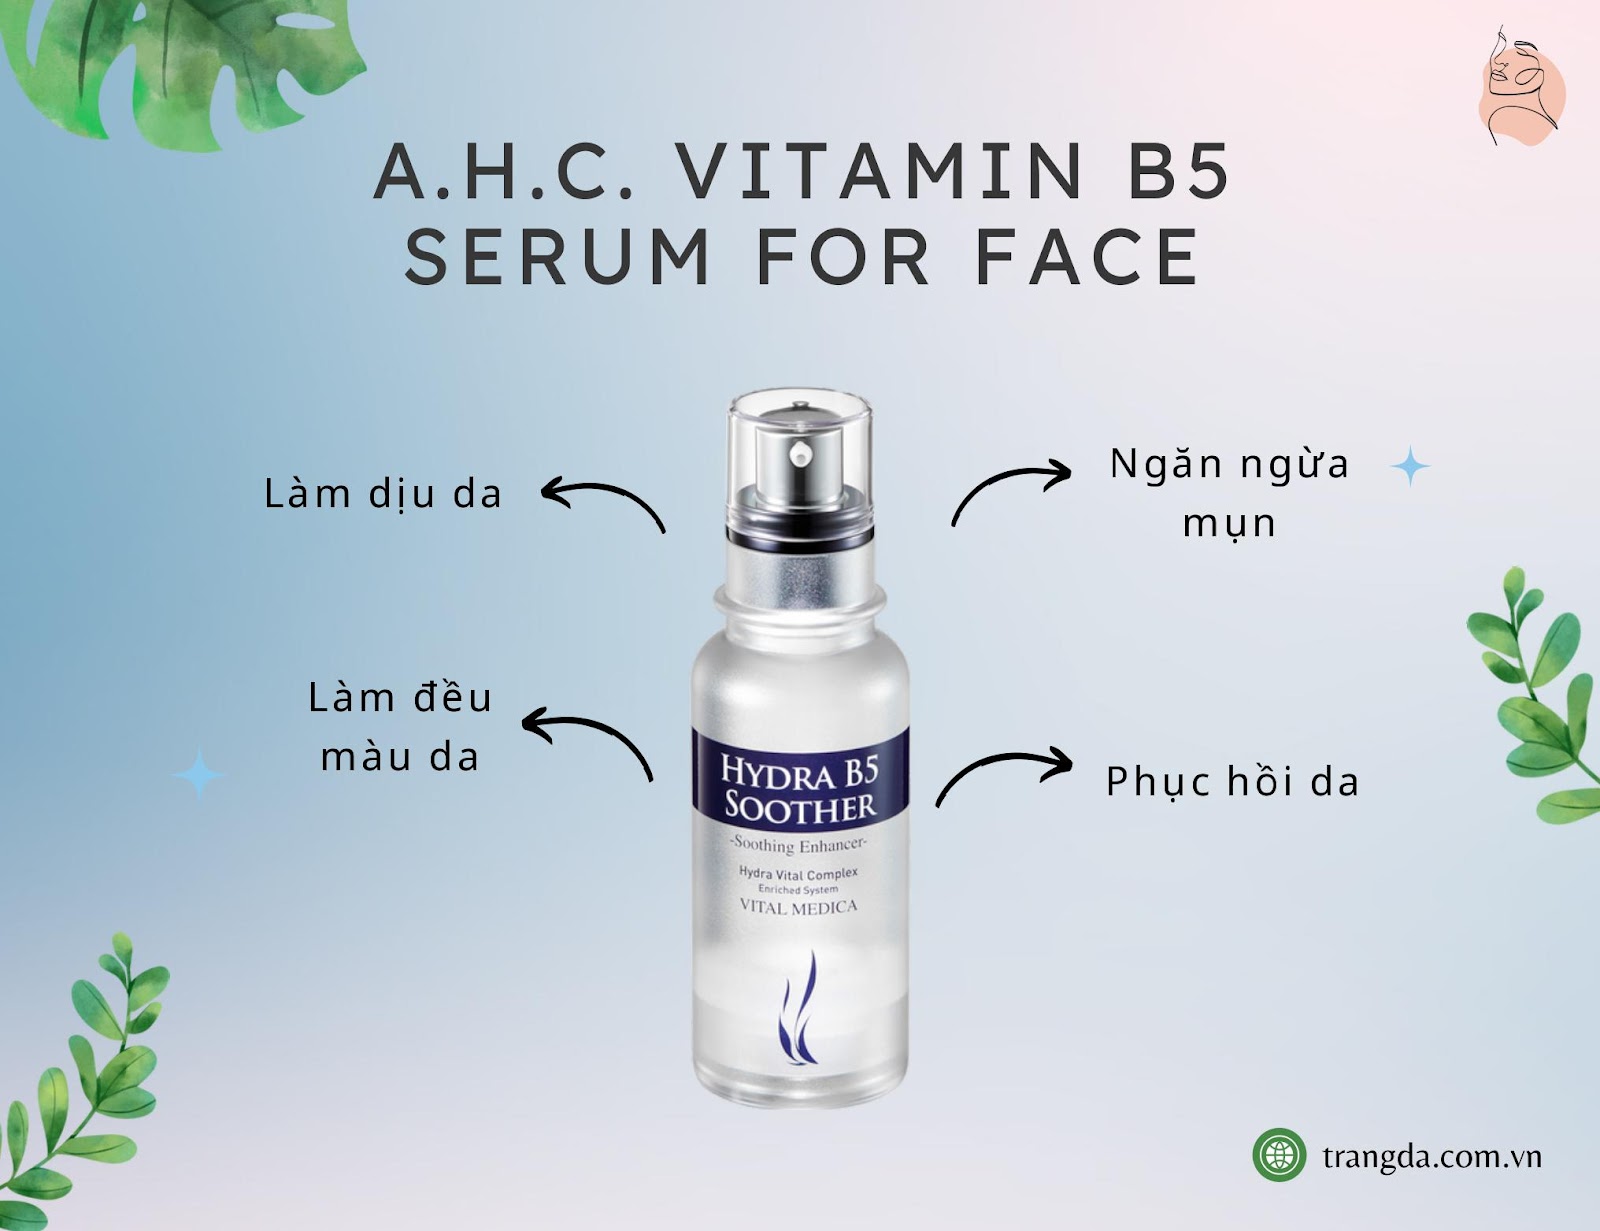 A.H.C. Vitamin B5 Serum for Face serum B5 phục hồi da treatment